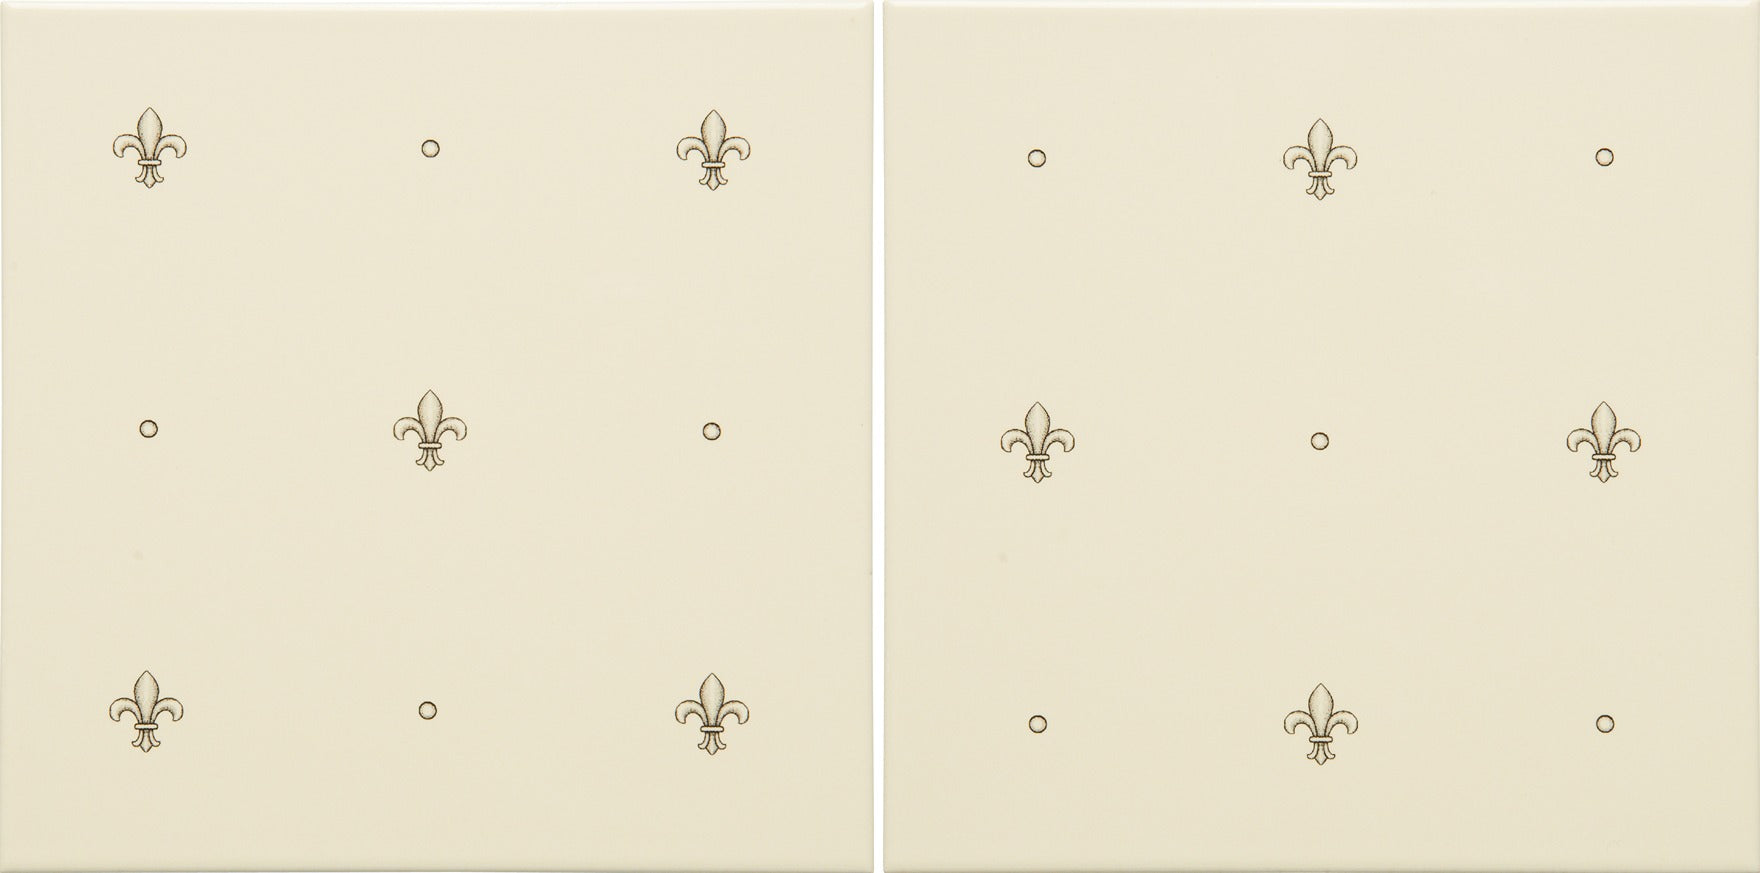 Original Style Artworks Fabergé Fleur de Lis 2-tile Set Charcoal Grey on County White